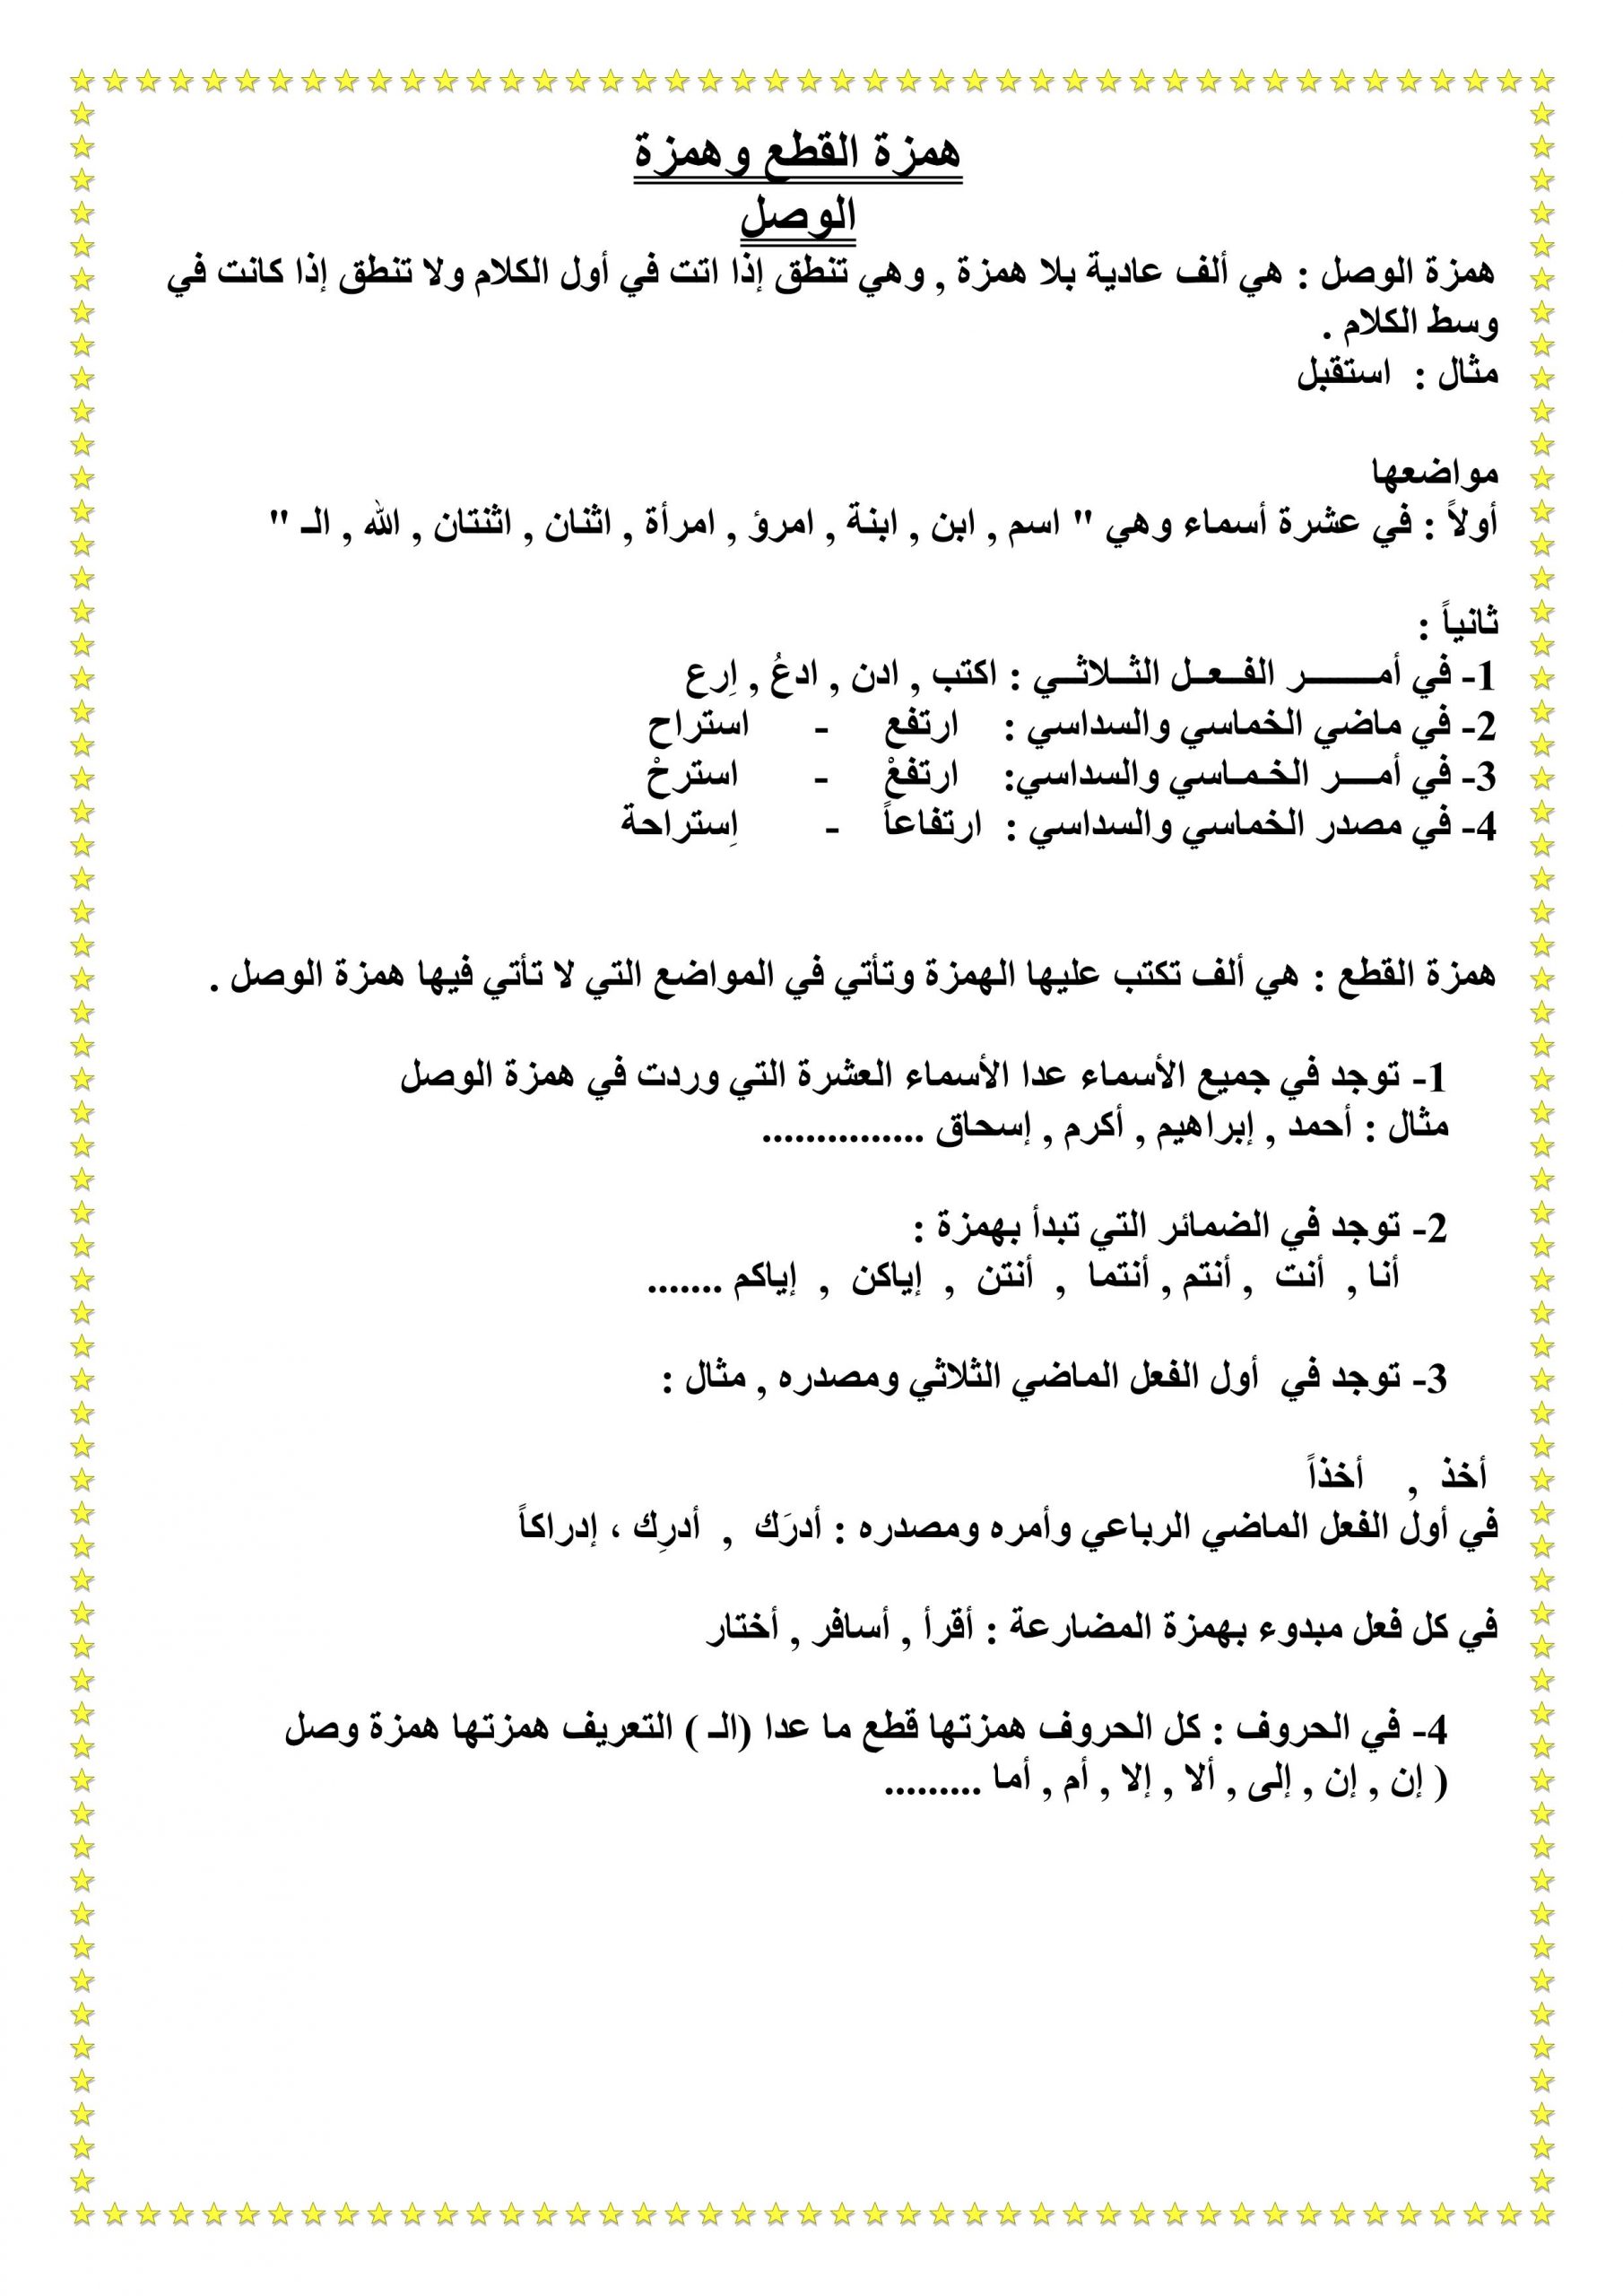 مذكرة همزة القطع وهمزة الوصل للصف الثالث مادة اللغة العربية ملفاتي